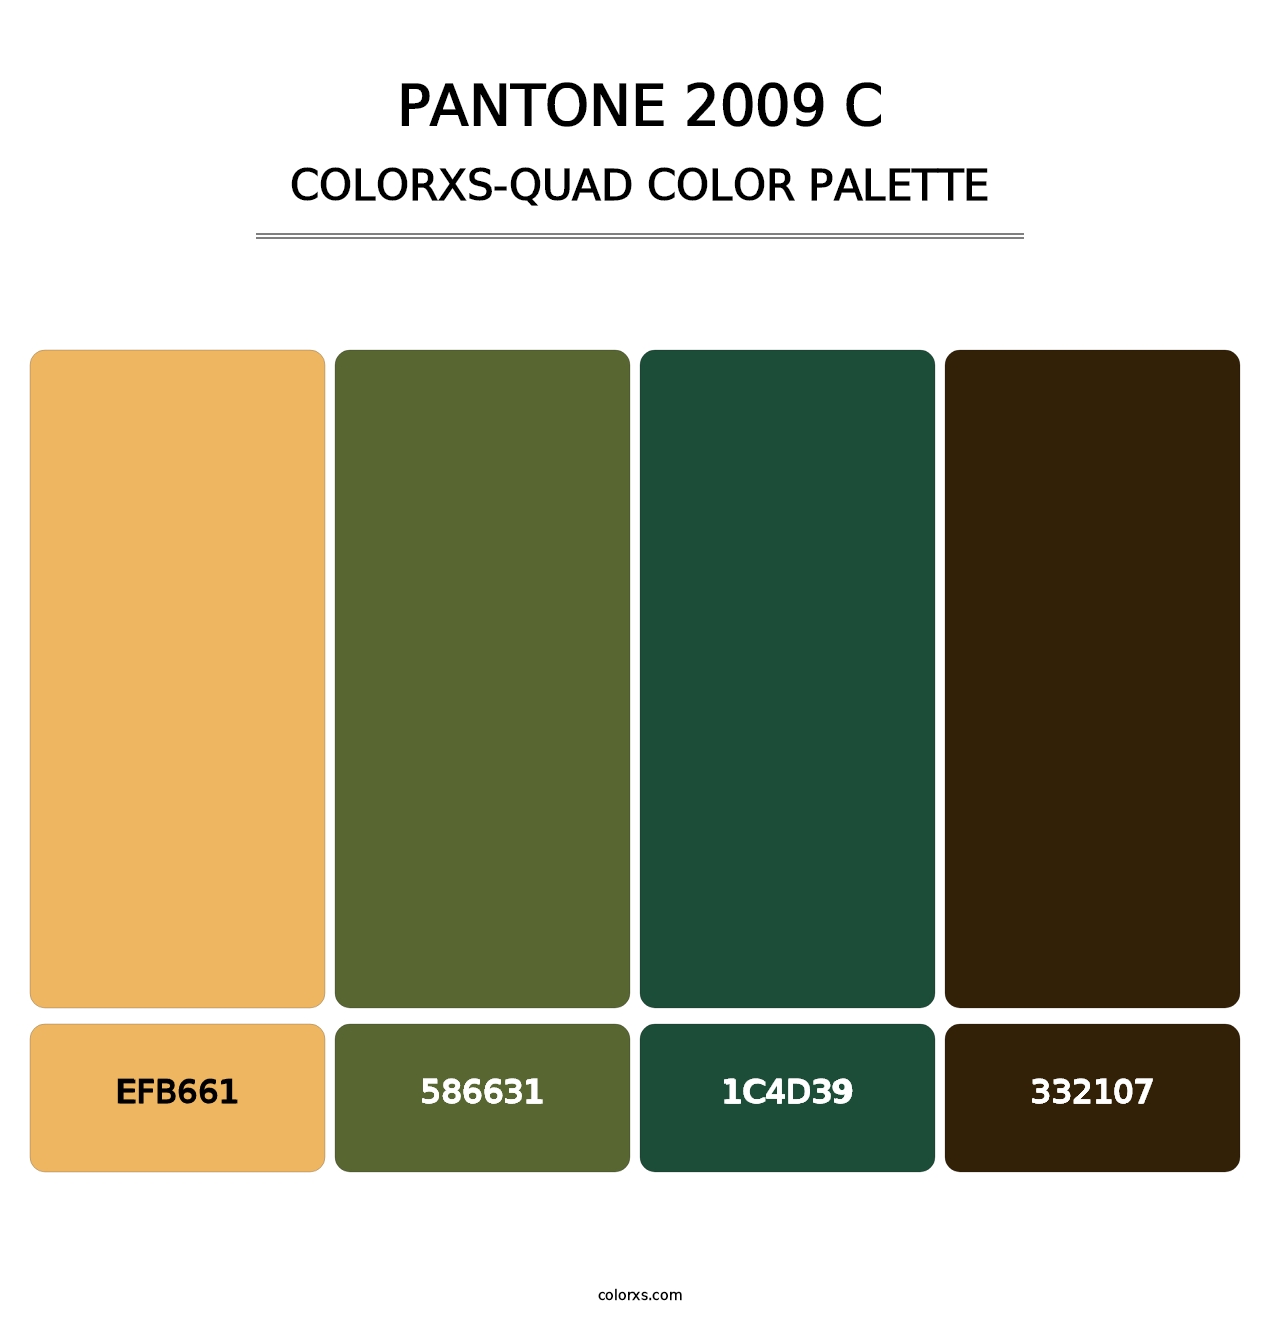 PANTONE 2009 C - Colorxs Quad Palette